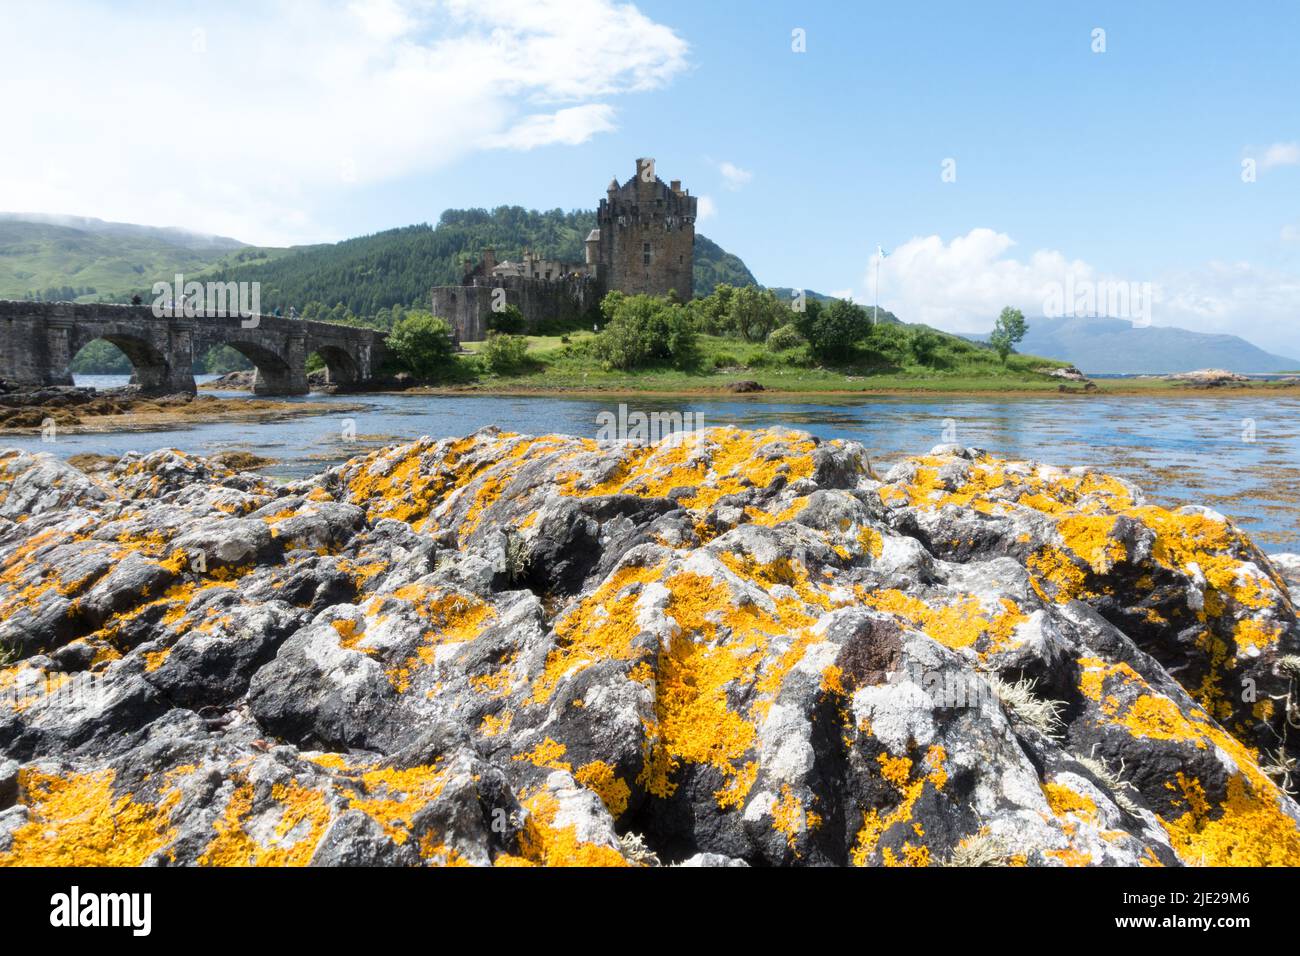 Scotland Eilean Donan Castle in Loch Duich, Highlands, UK Stock Photo